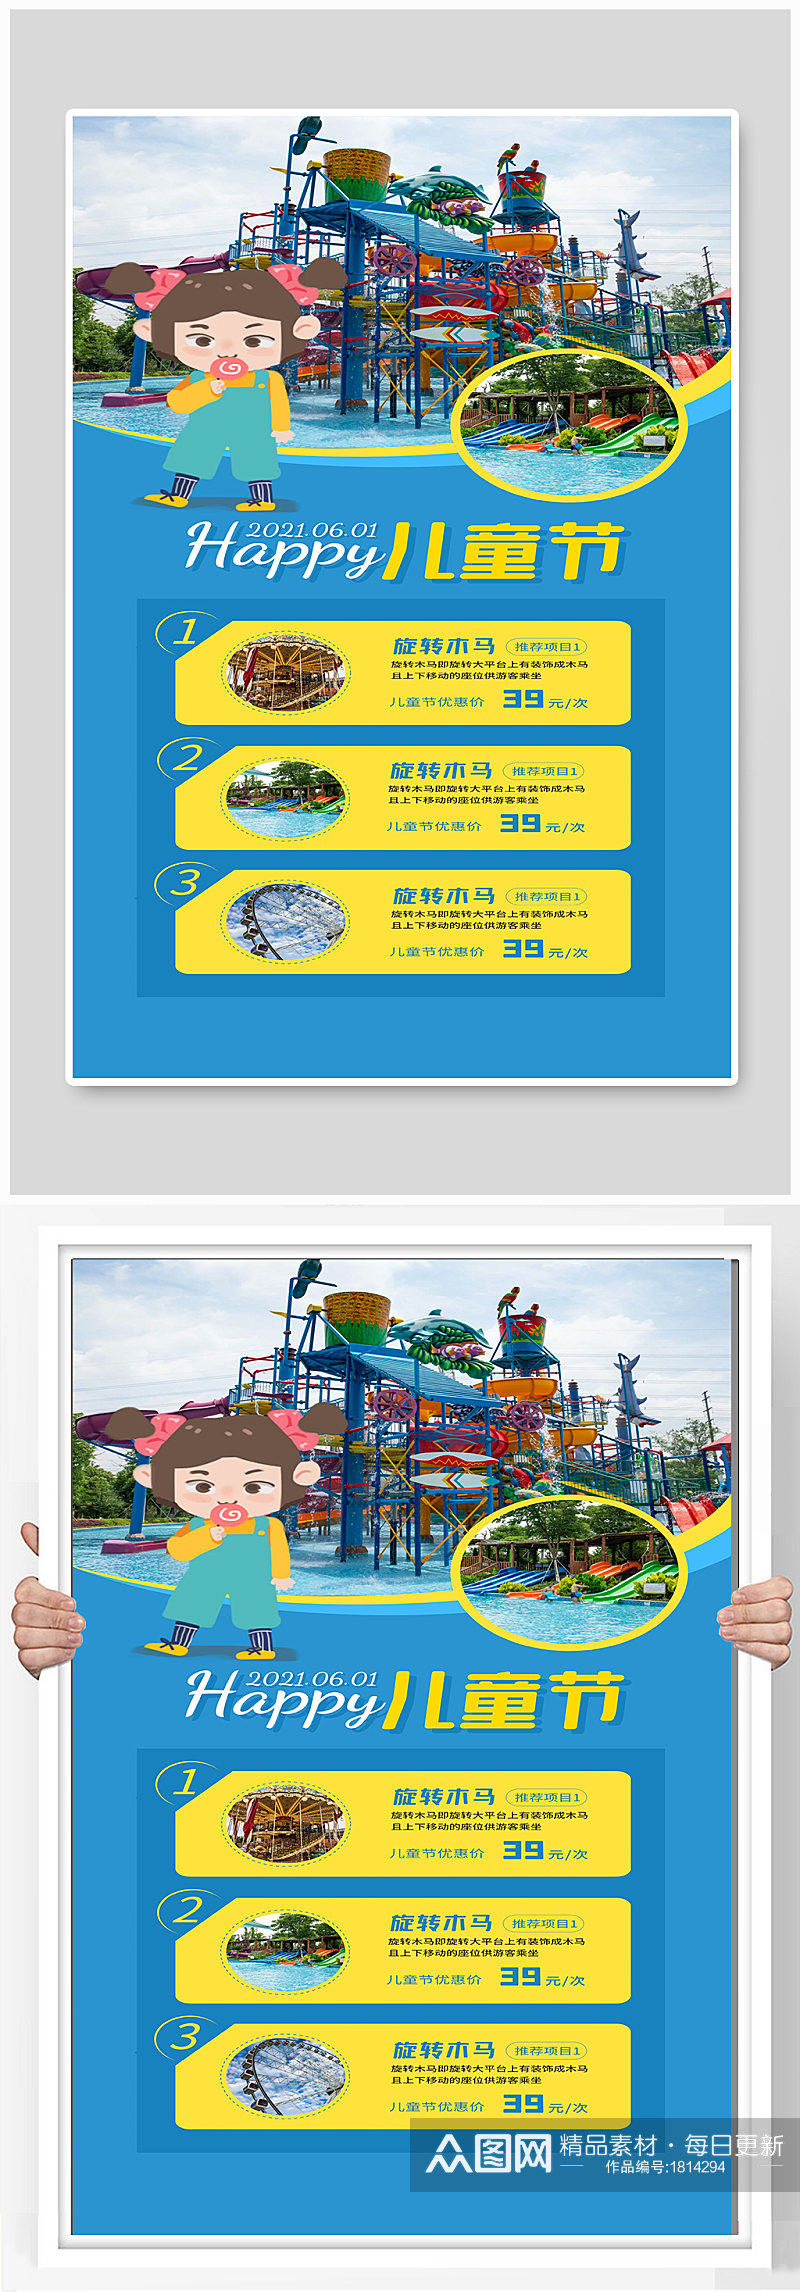 儿童节游乐场六一欢乐宣传海报设计素材